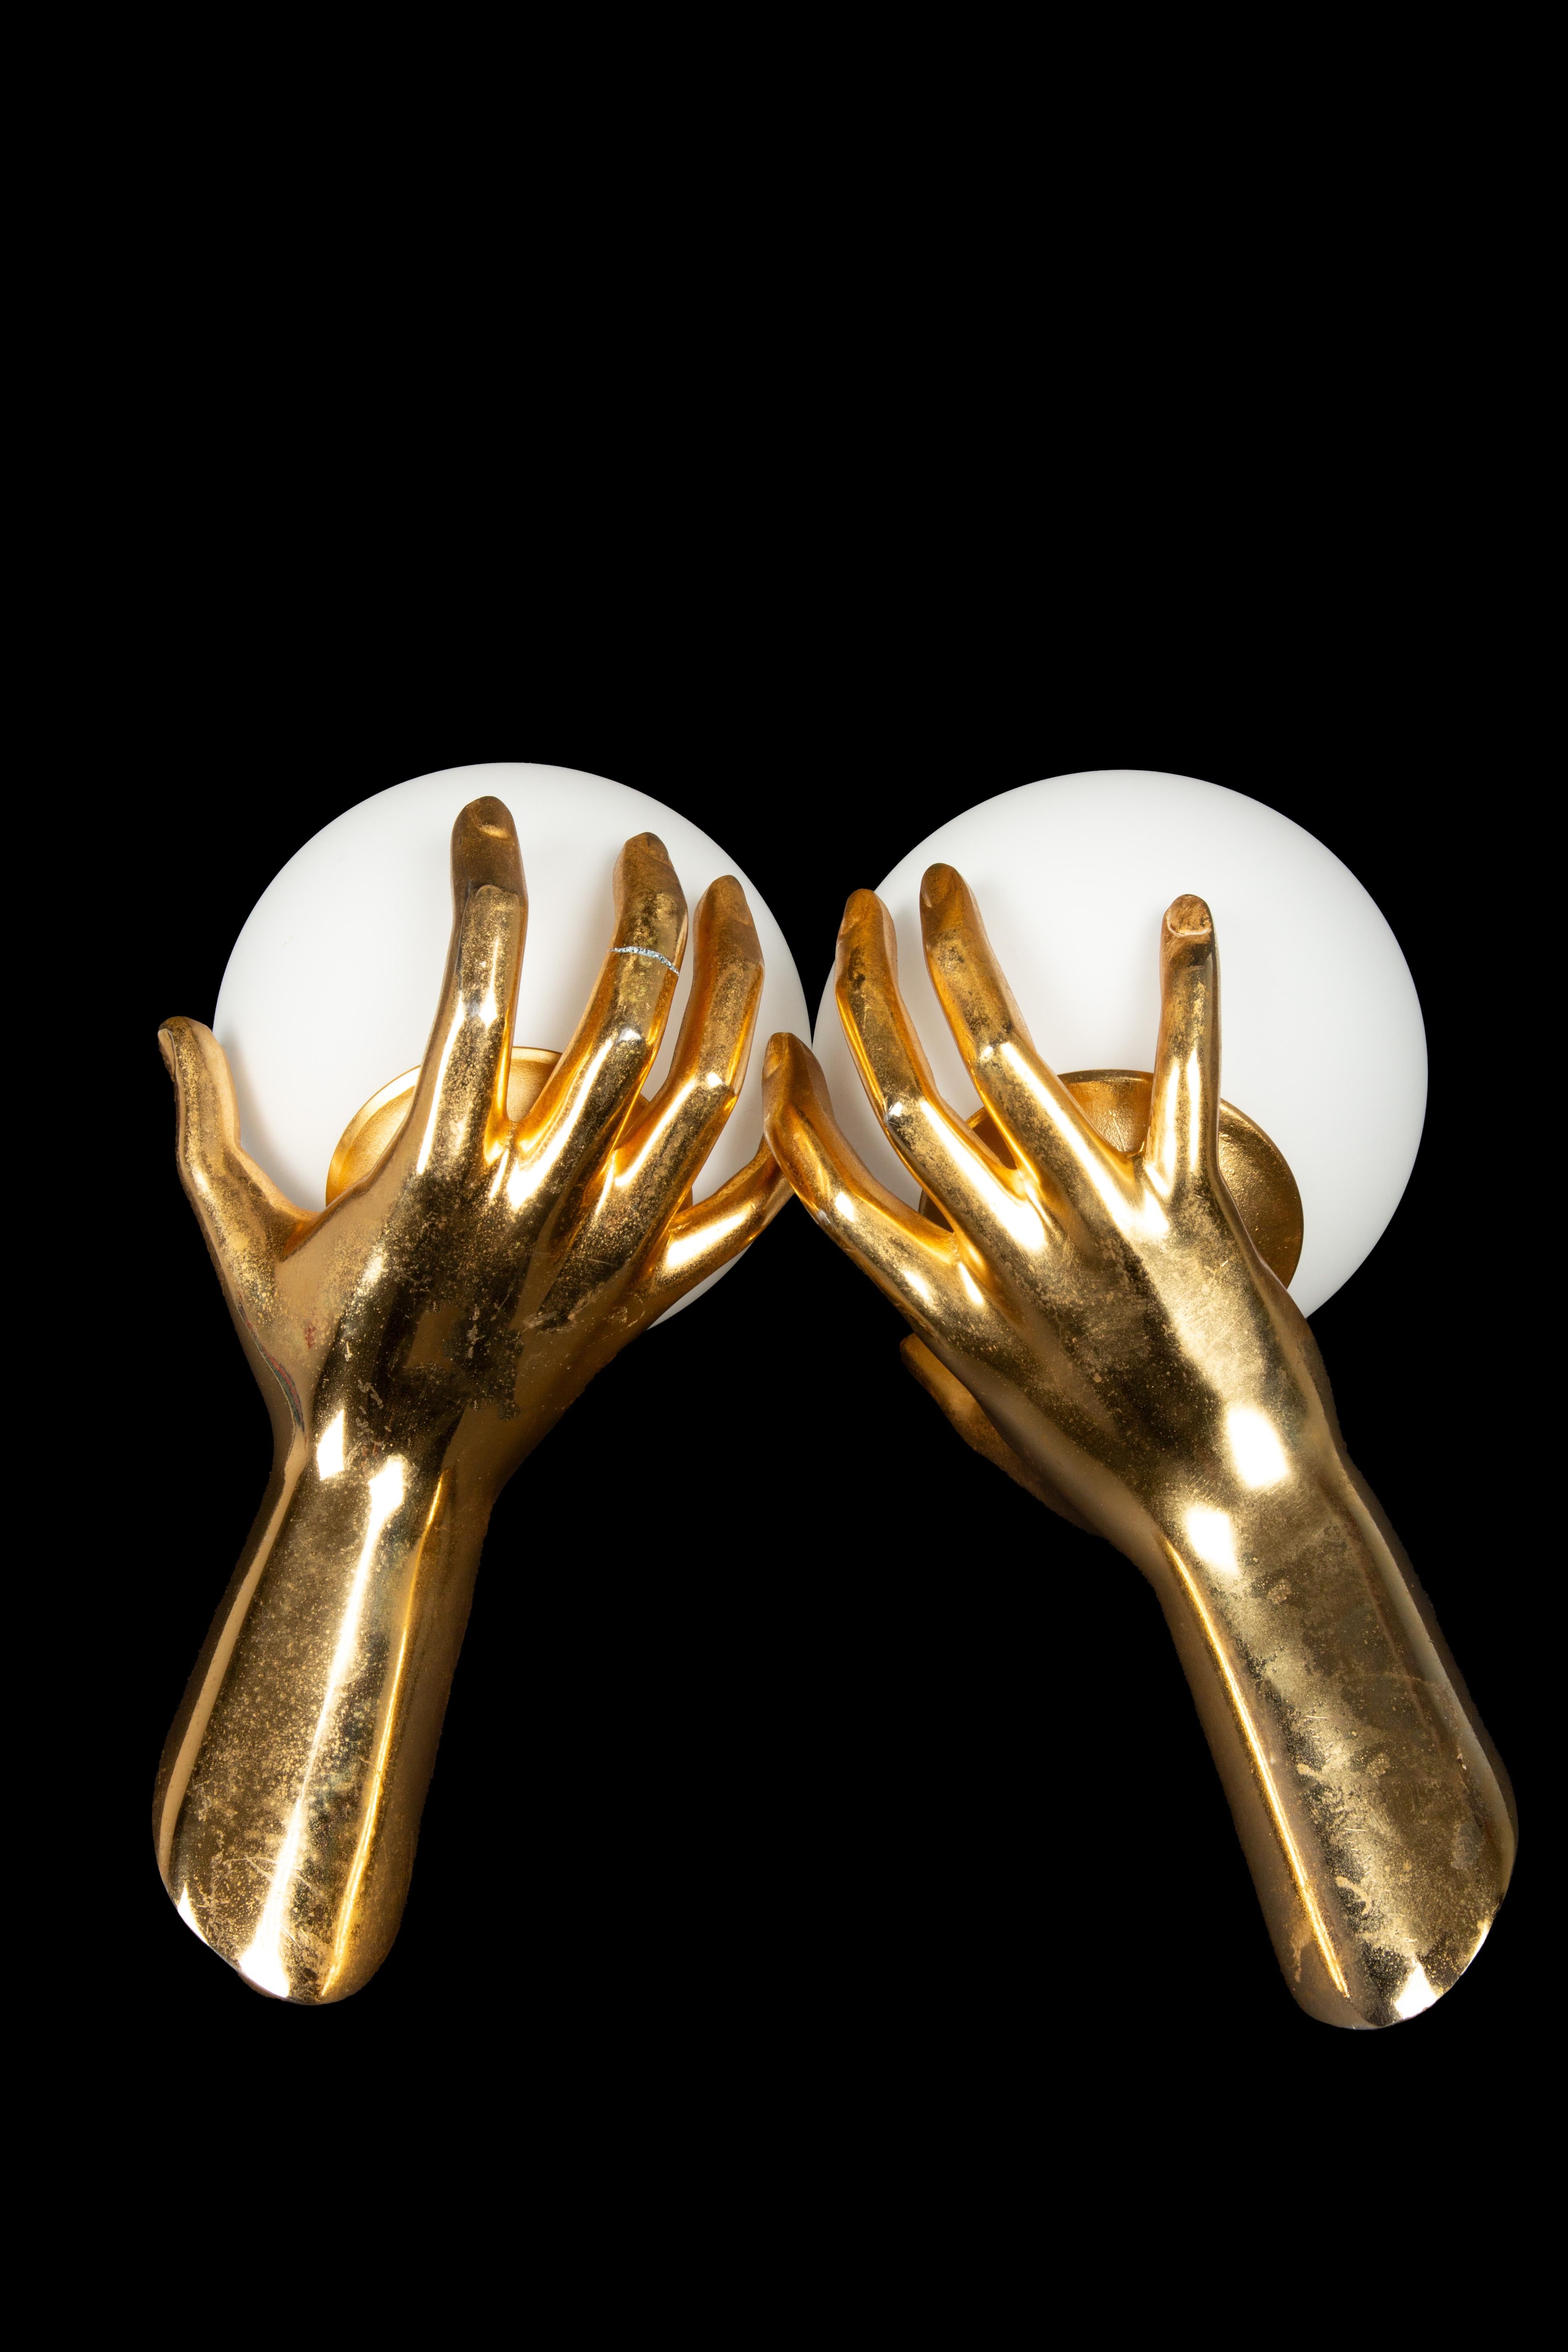 Exquise et extrêmement rare paire d'appliques à main en bronze doré fabriquées par la Maison Arlus. Ces pièces remarquables, portant le numéro de modèle 1436, sont dotées d'un design captivant représentant une main en bronze finement détaillée